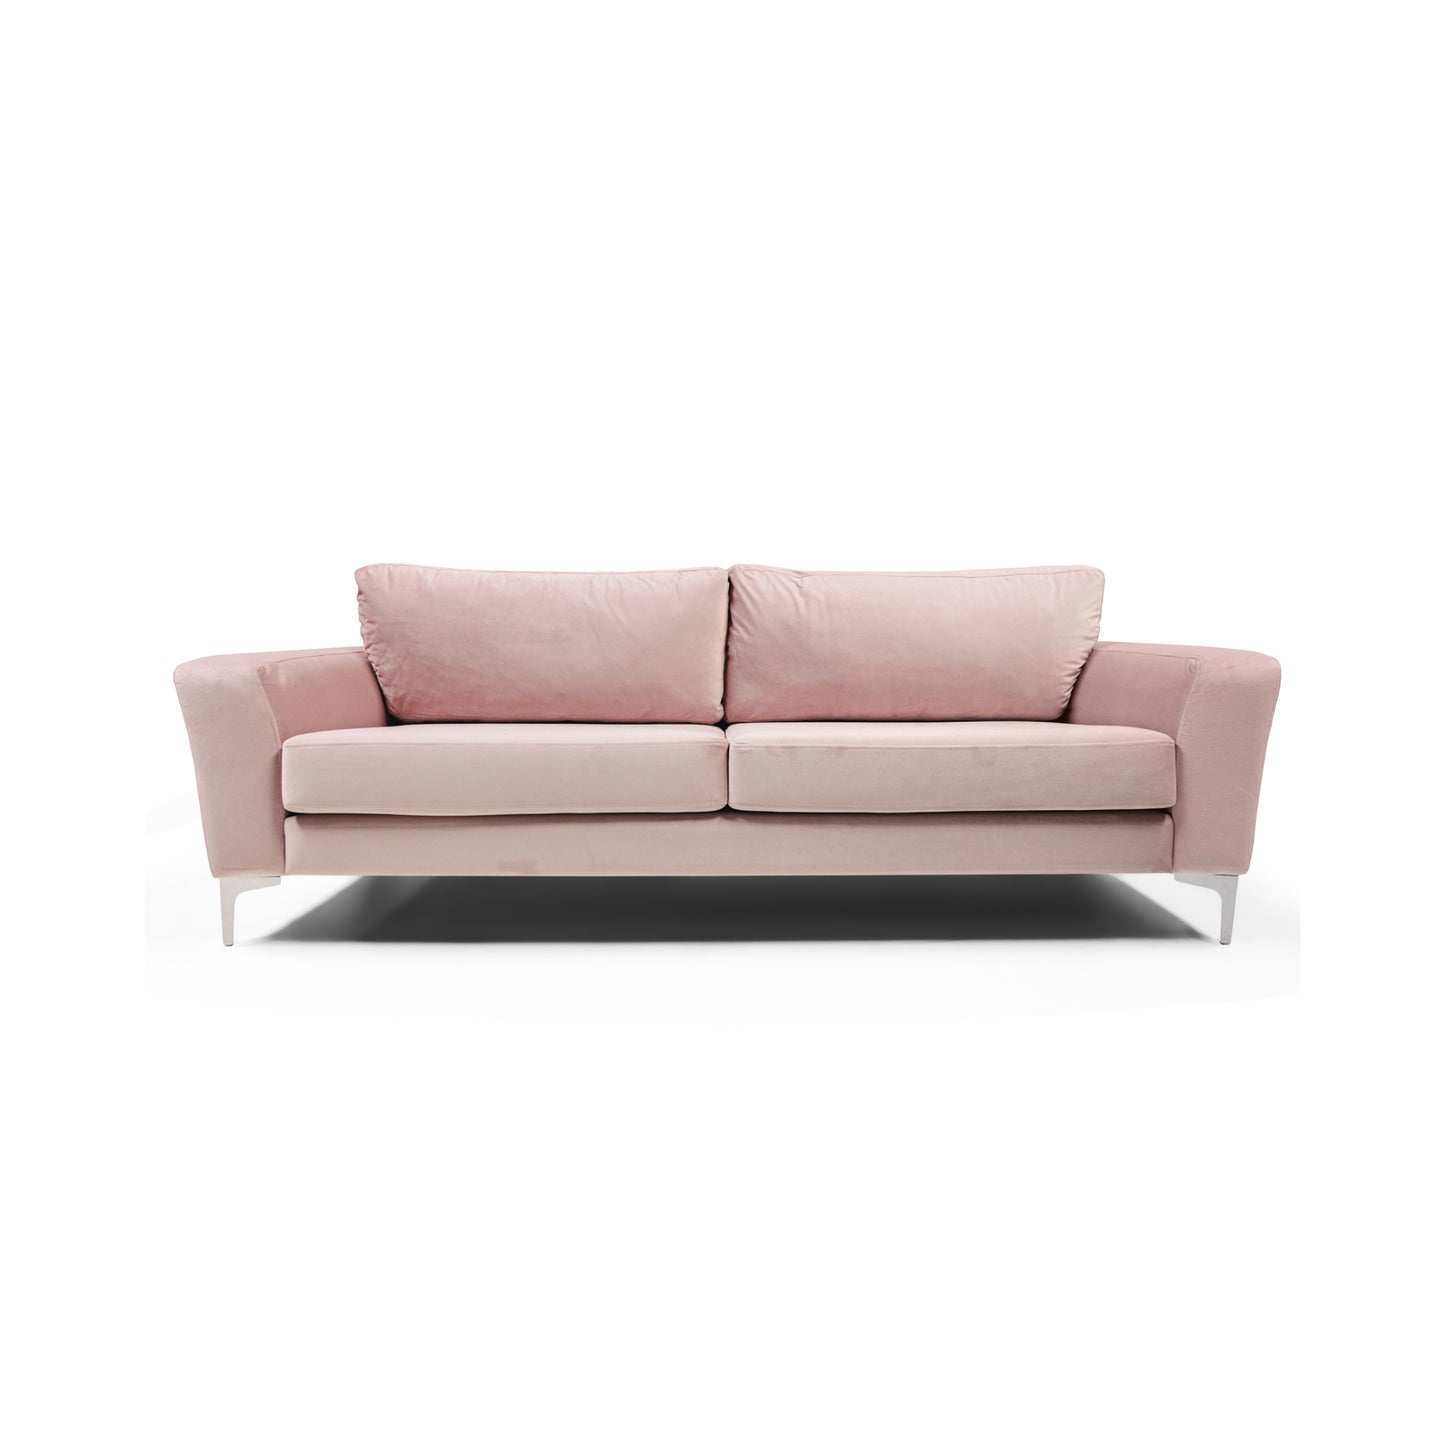 The Iveagh Large Sofa